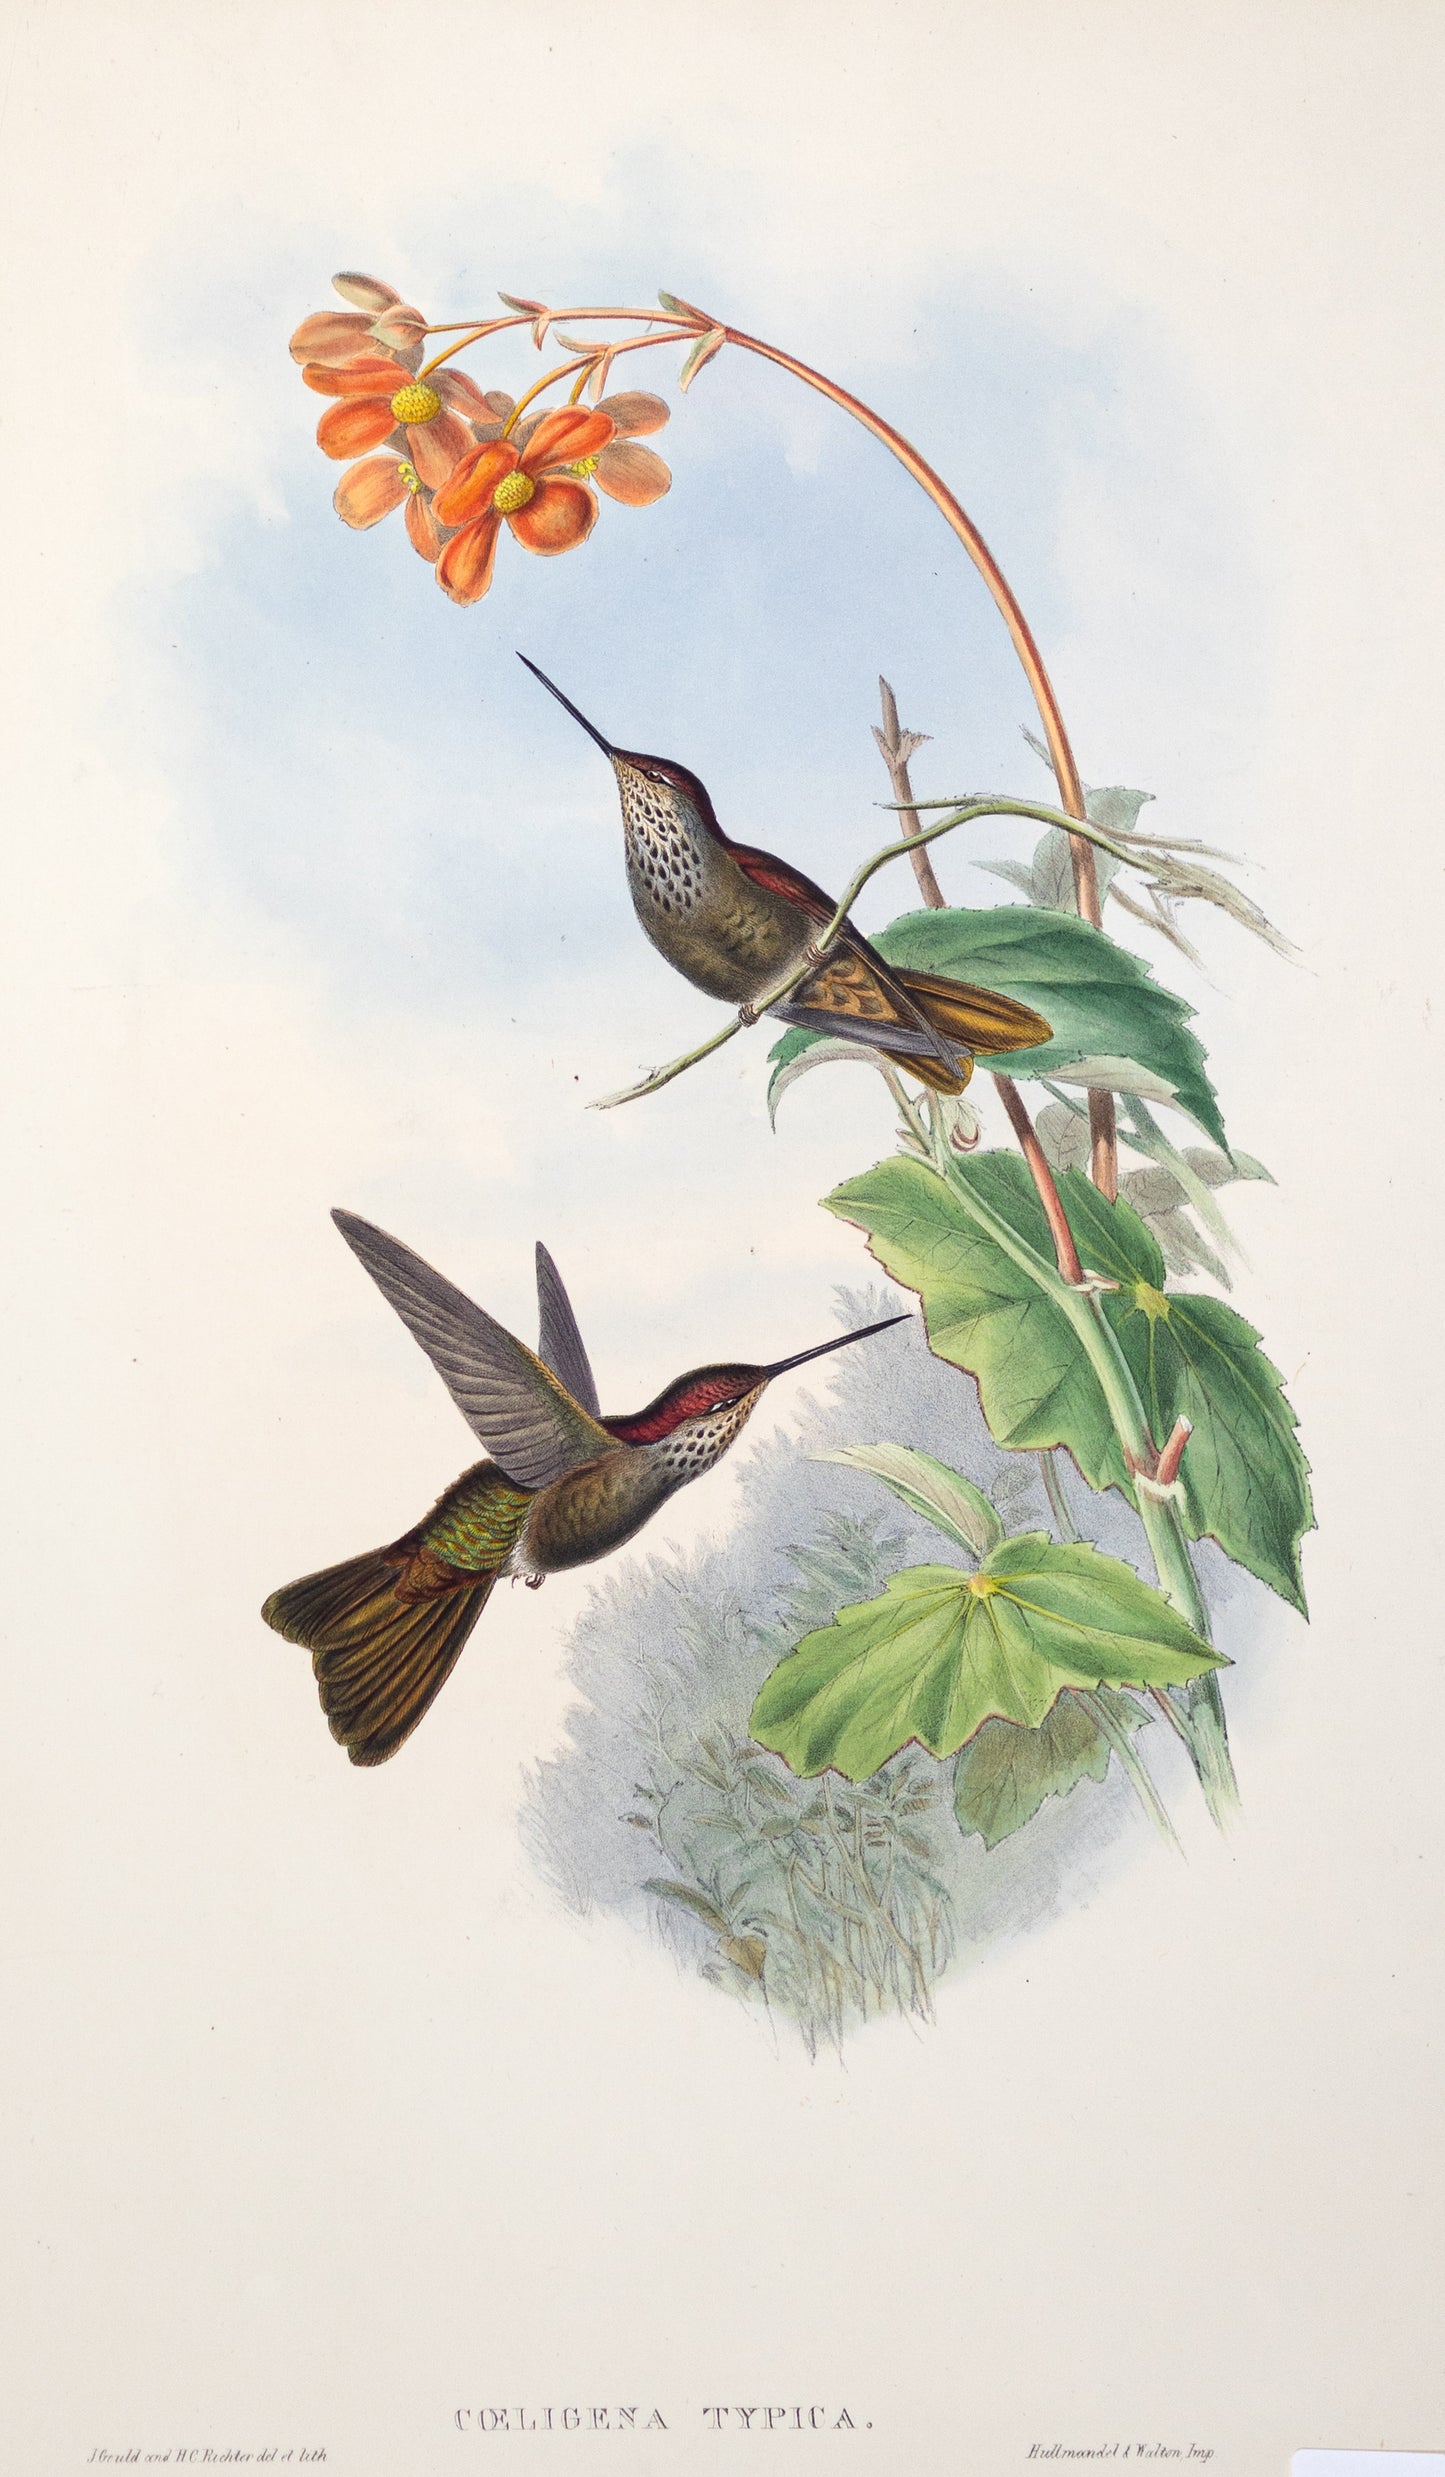 John Gould (1804-1881), Coeligena Typica